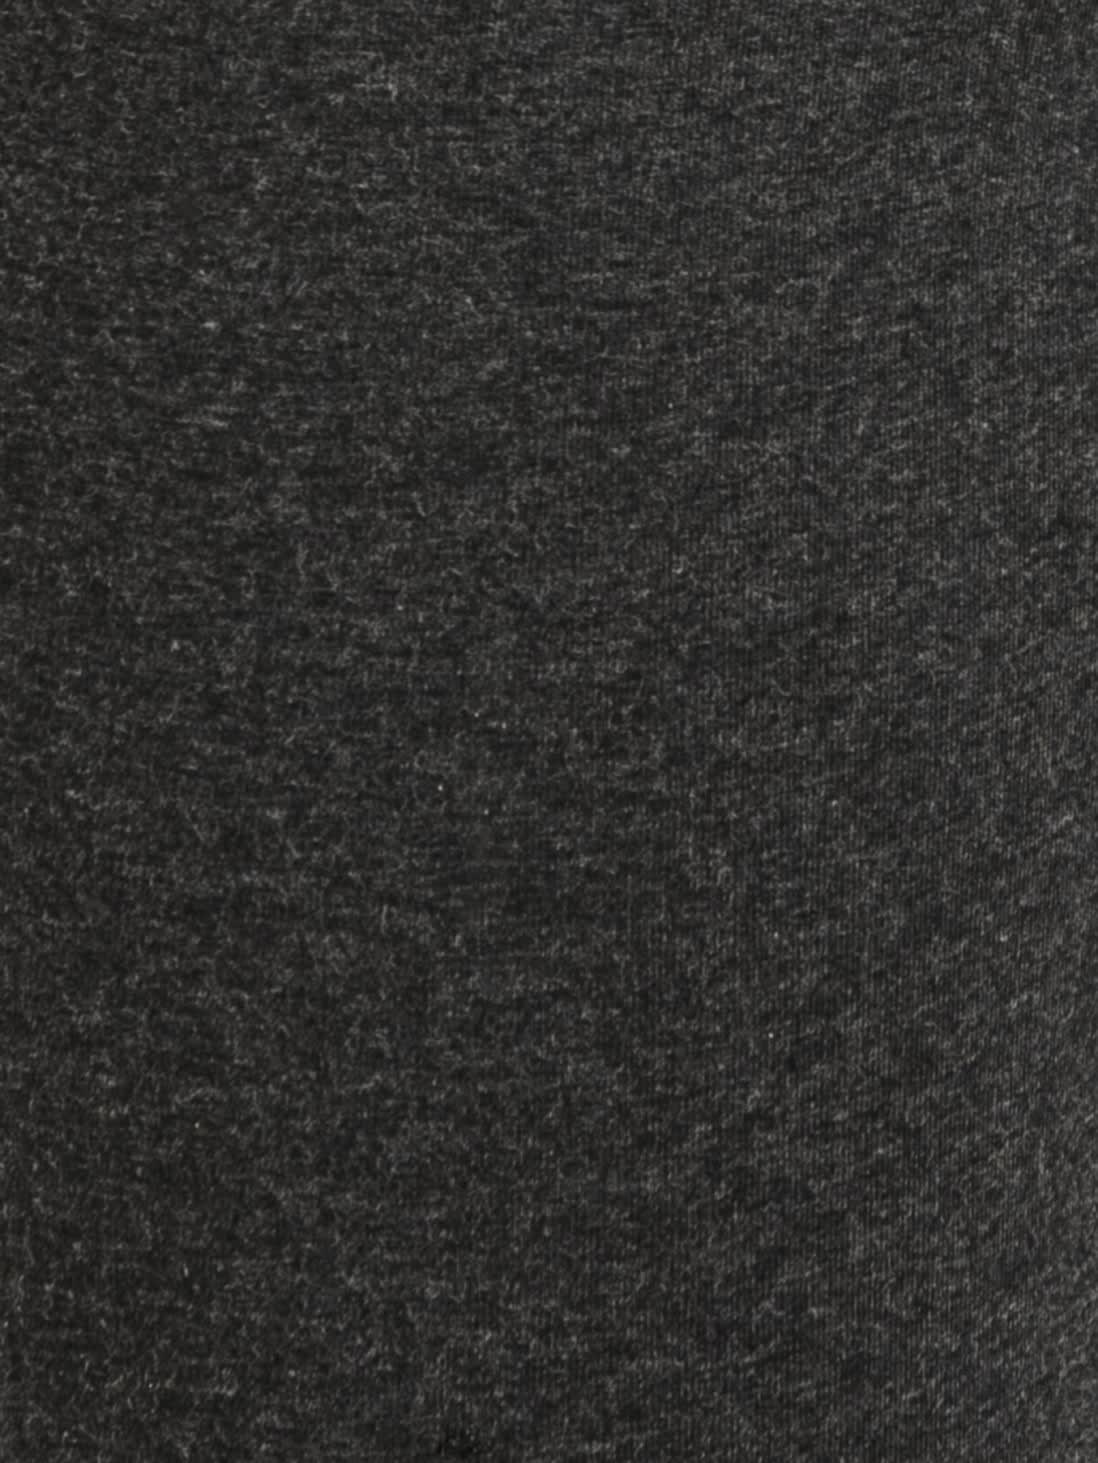 Buy Black Melange Joggers with Side Pocket & Drawstring Closure for ...